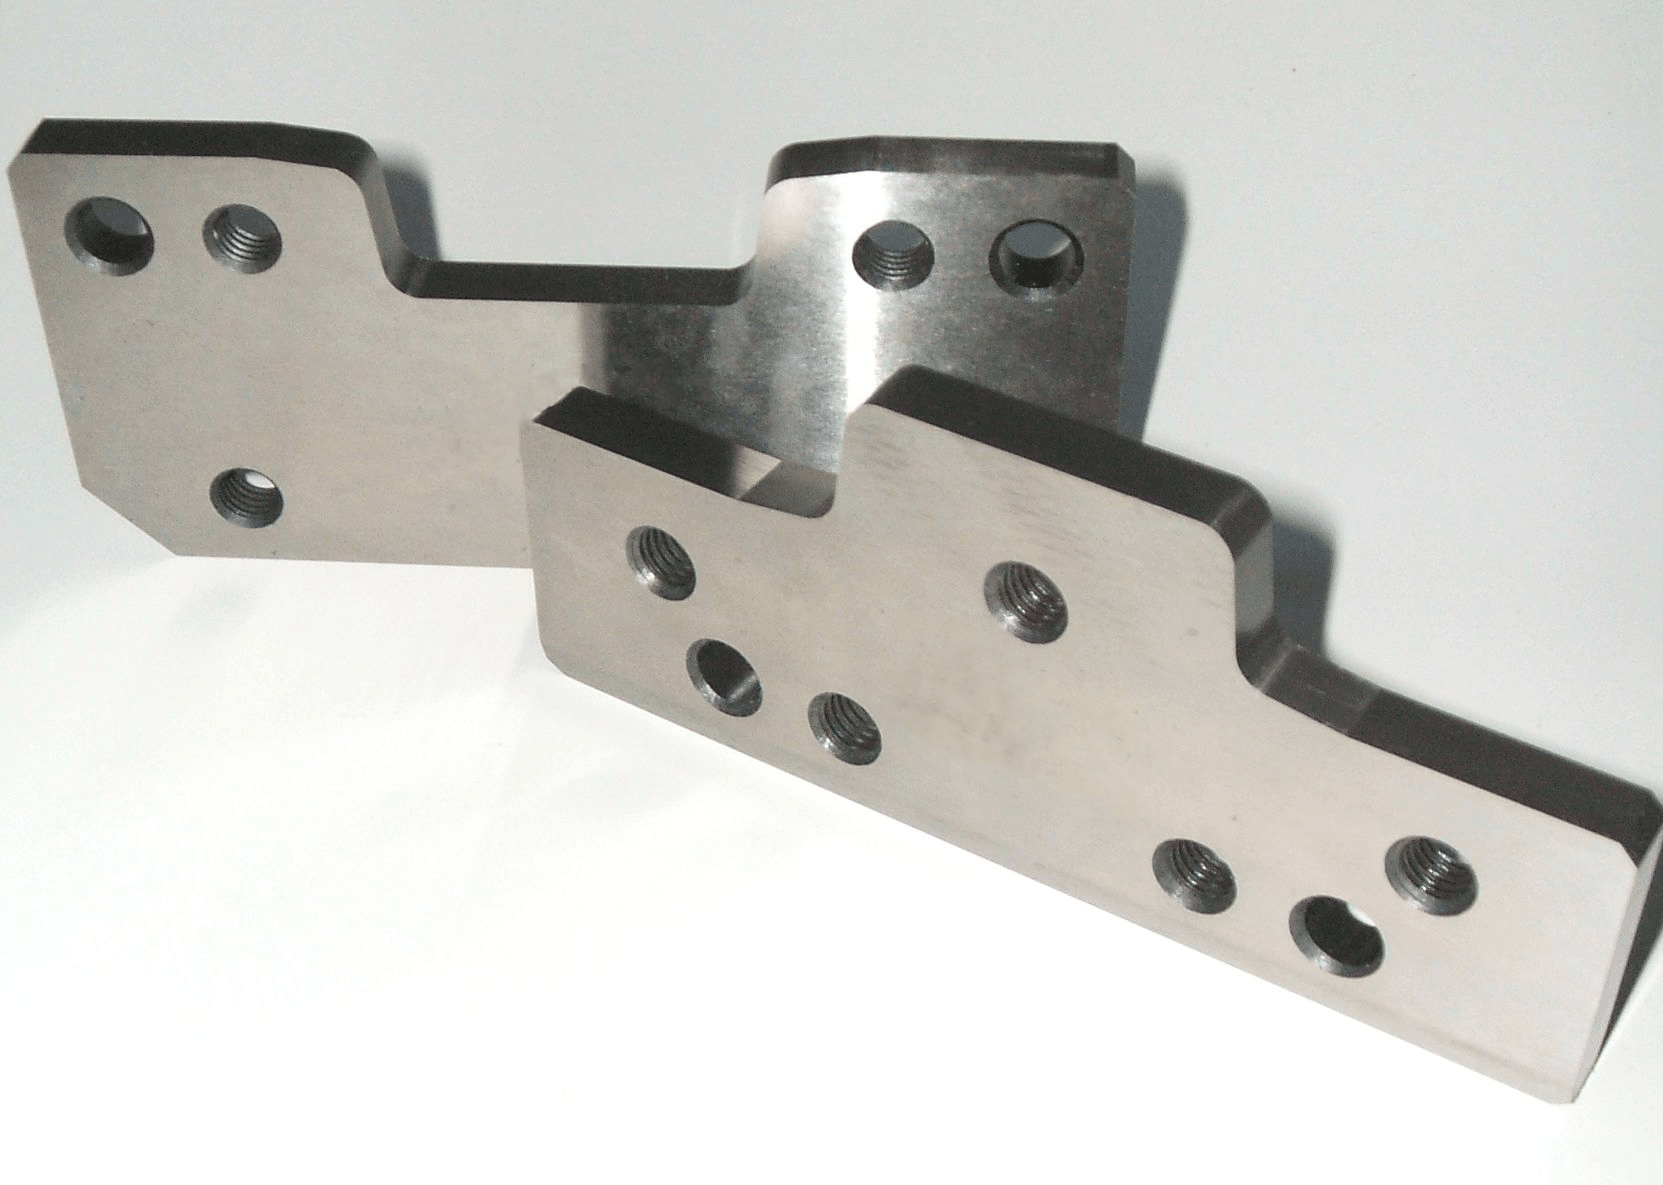 Inner frame set of knives